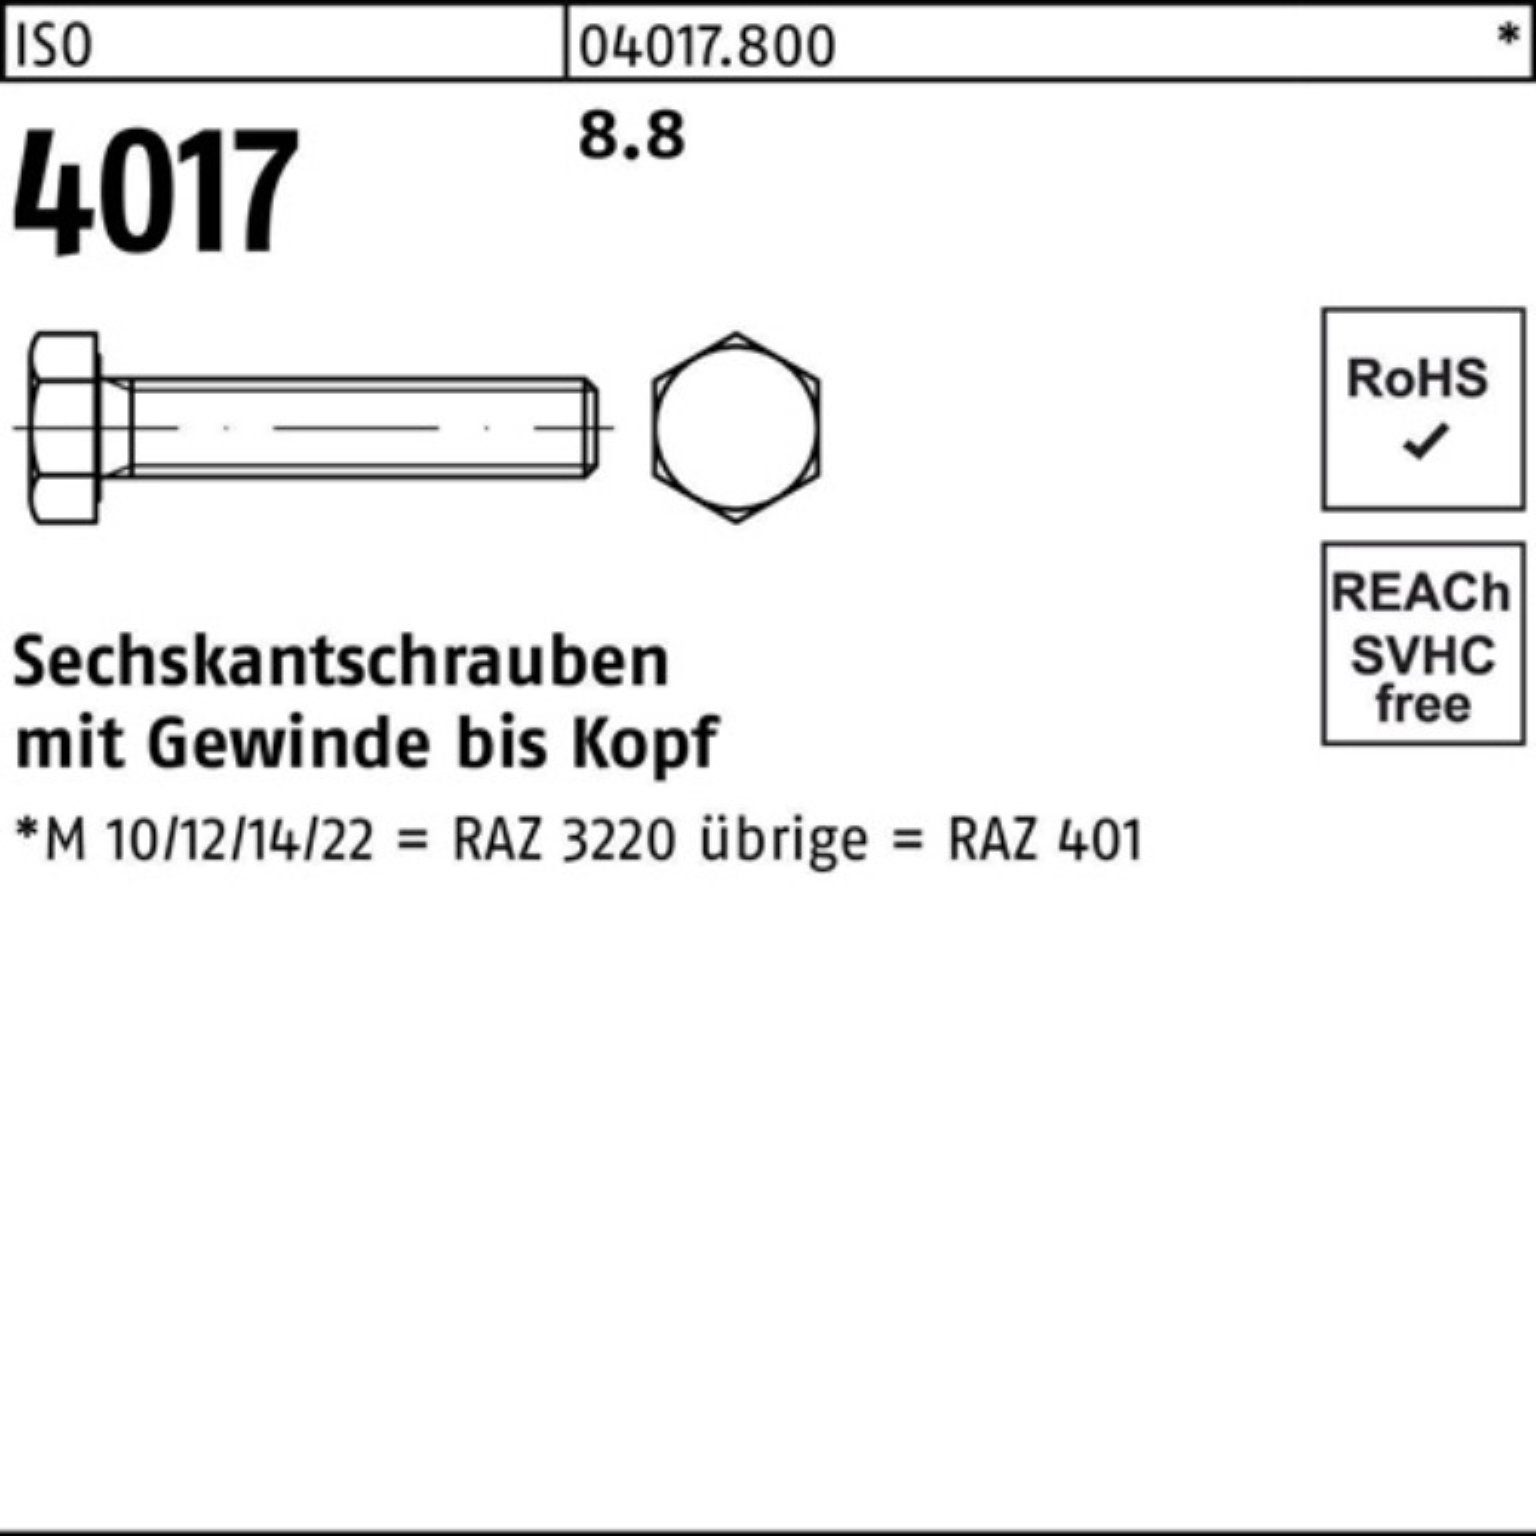 Bufab Sechskantschraube 100er Pack Sechskantschraube M30x VG 4017 401 Stück 1 340 8.8 ISO ISO